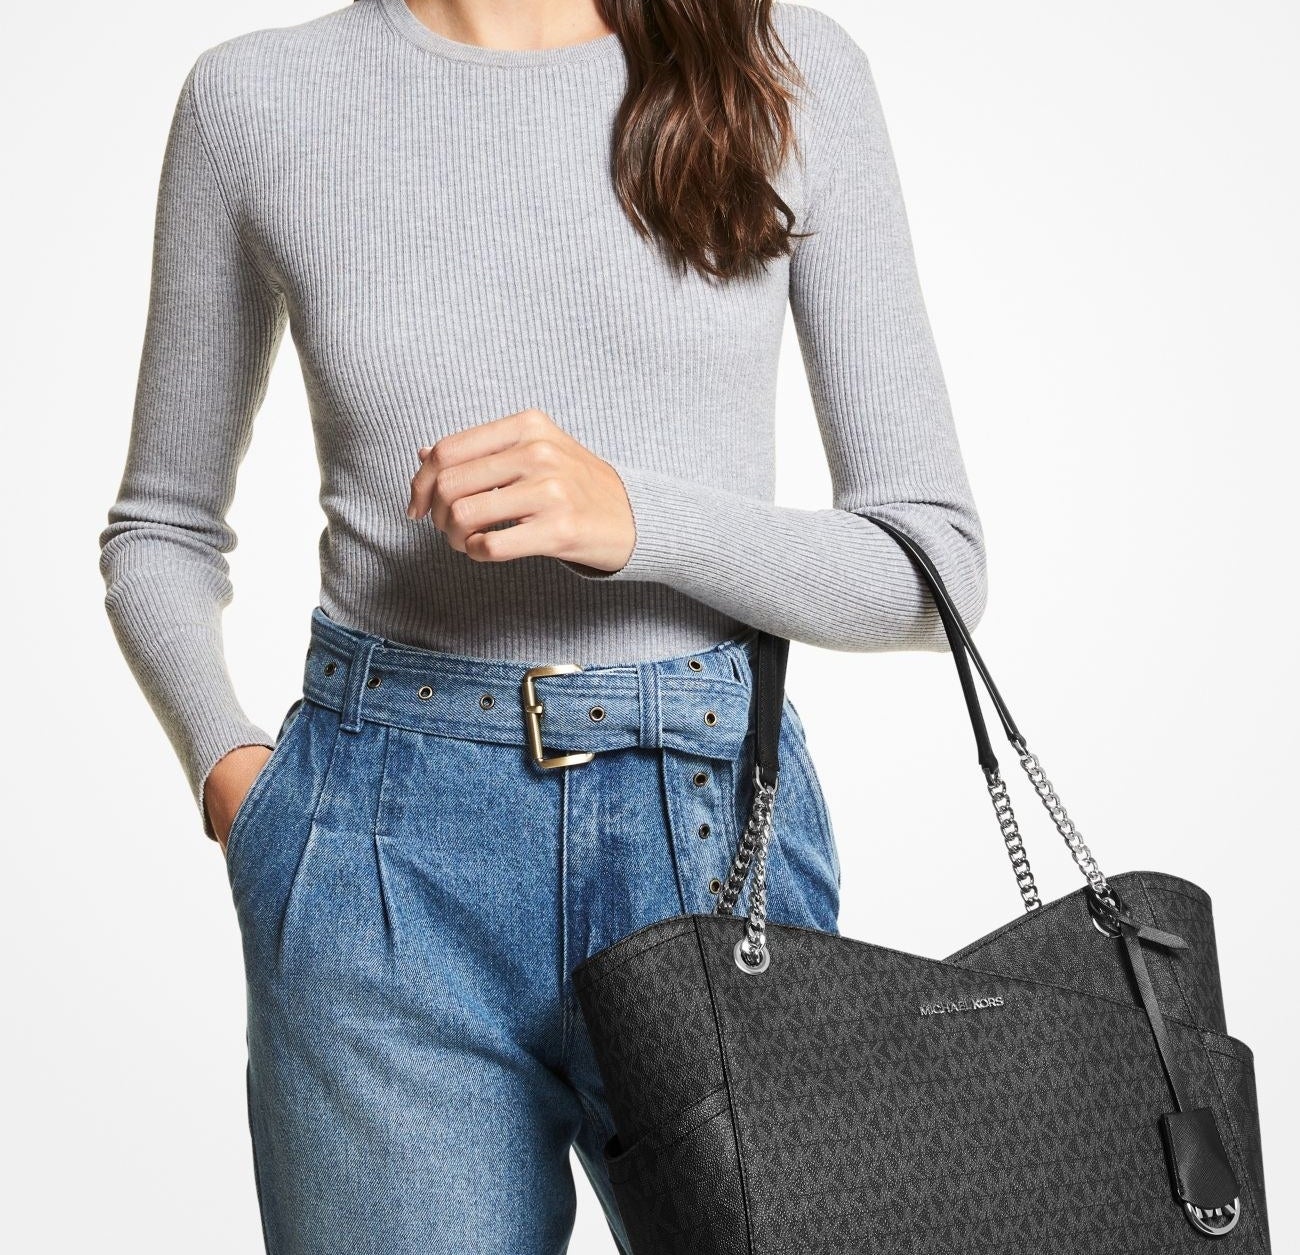 Model carrying large shoulder bag